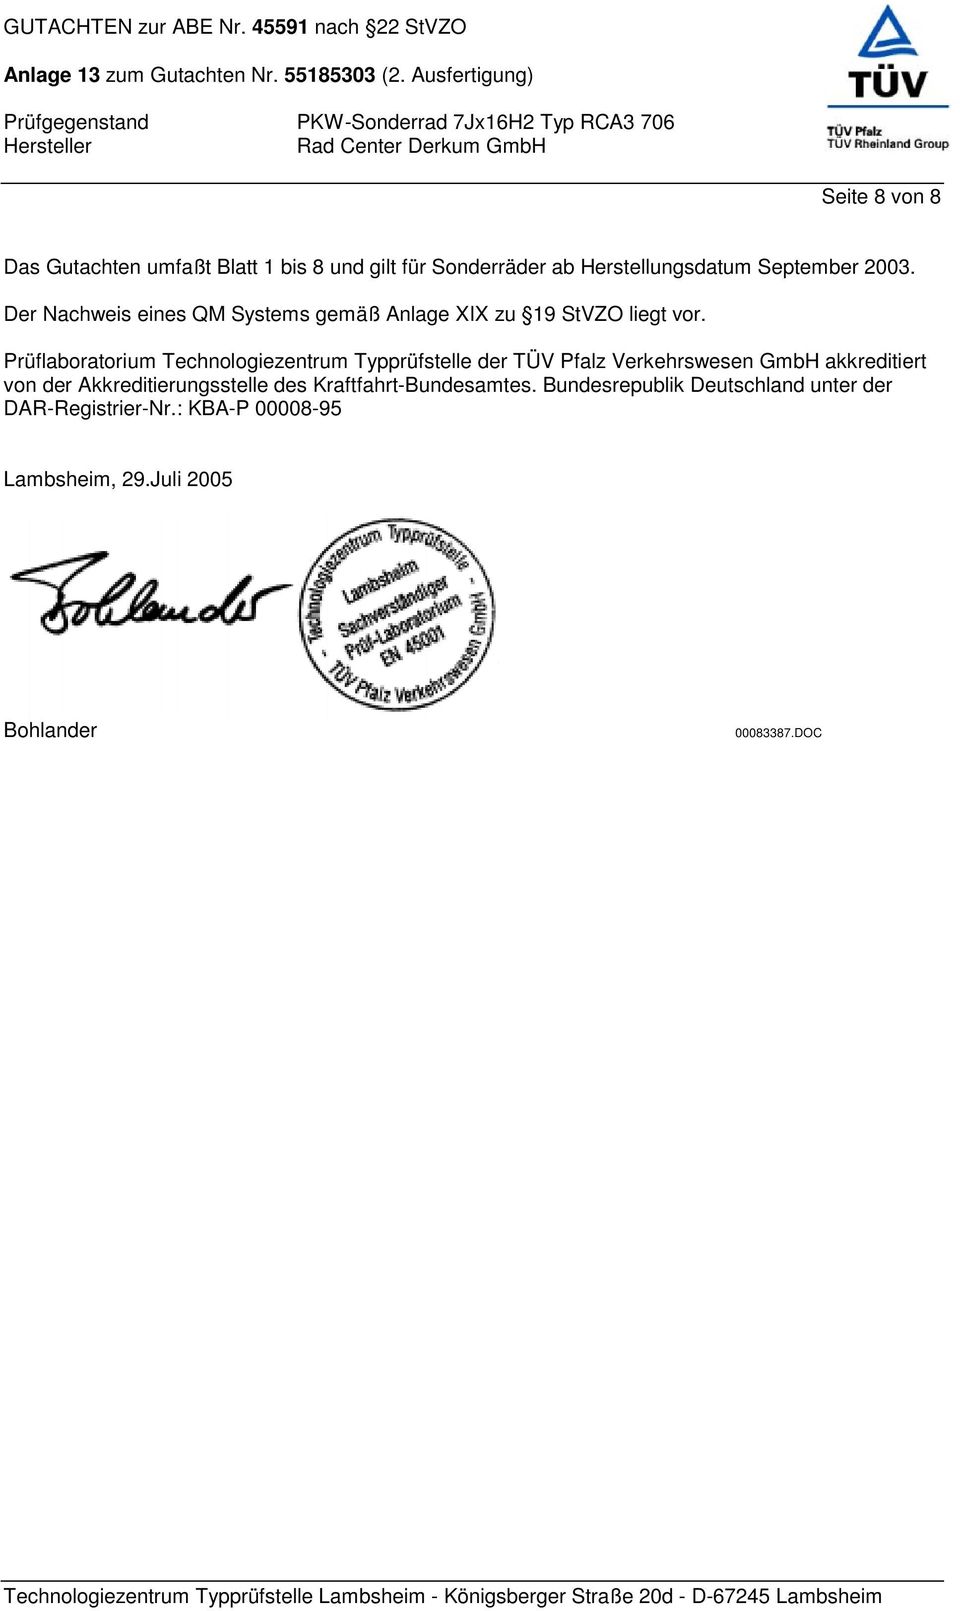 Prüflaboratorium Technologiezentrum Typprüfstelle der TÜV Pfalz Verkehrswesen GmbH akkreditiert von der